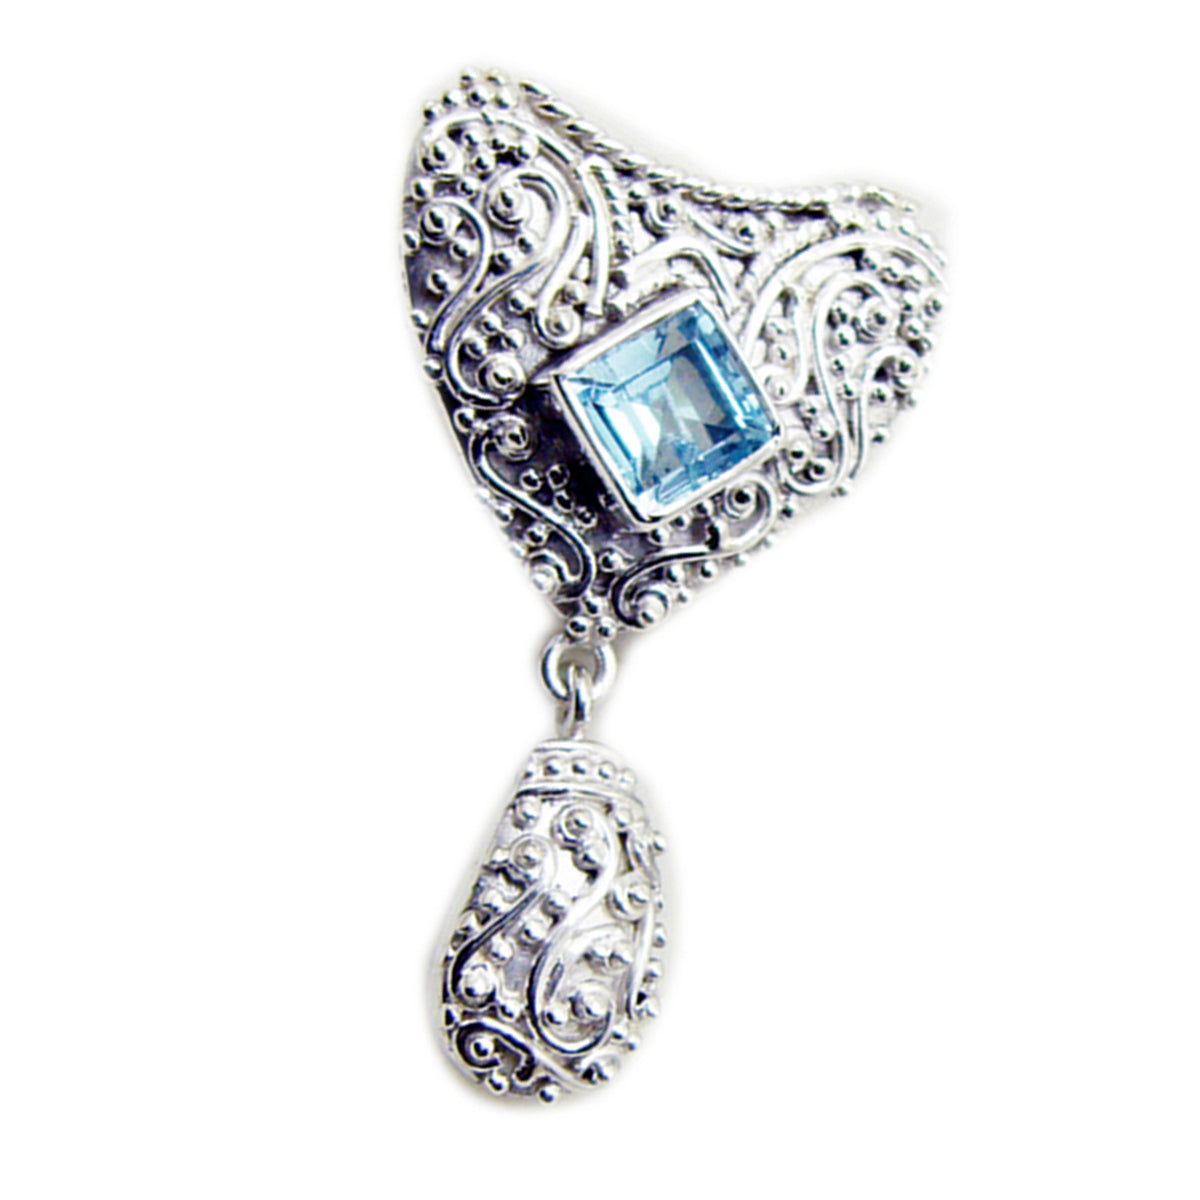 Riyo Ravishing Gemstone Square Faceted Blue Blue Topaz Sterling Silver Pendant Gift For Handmade